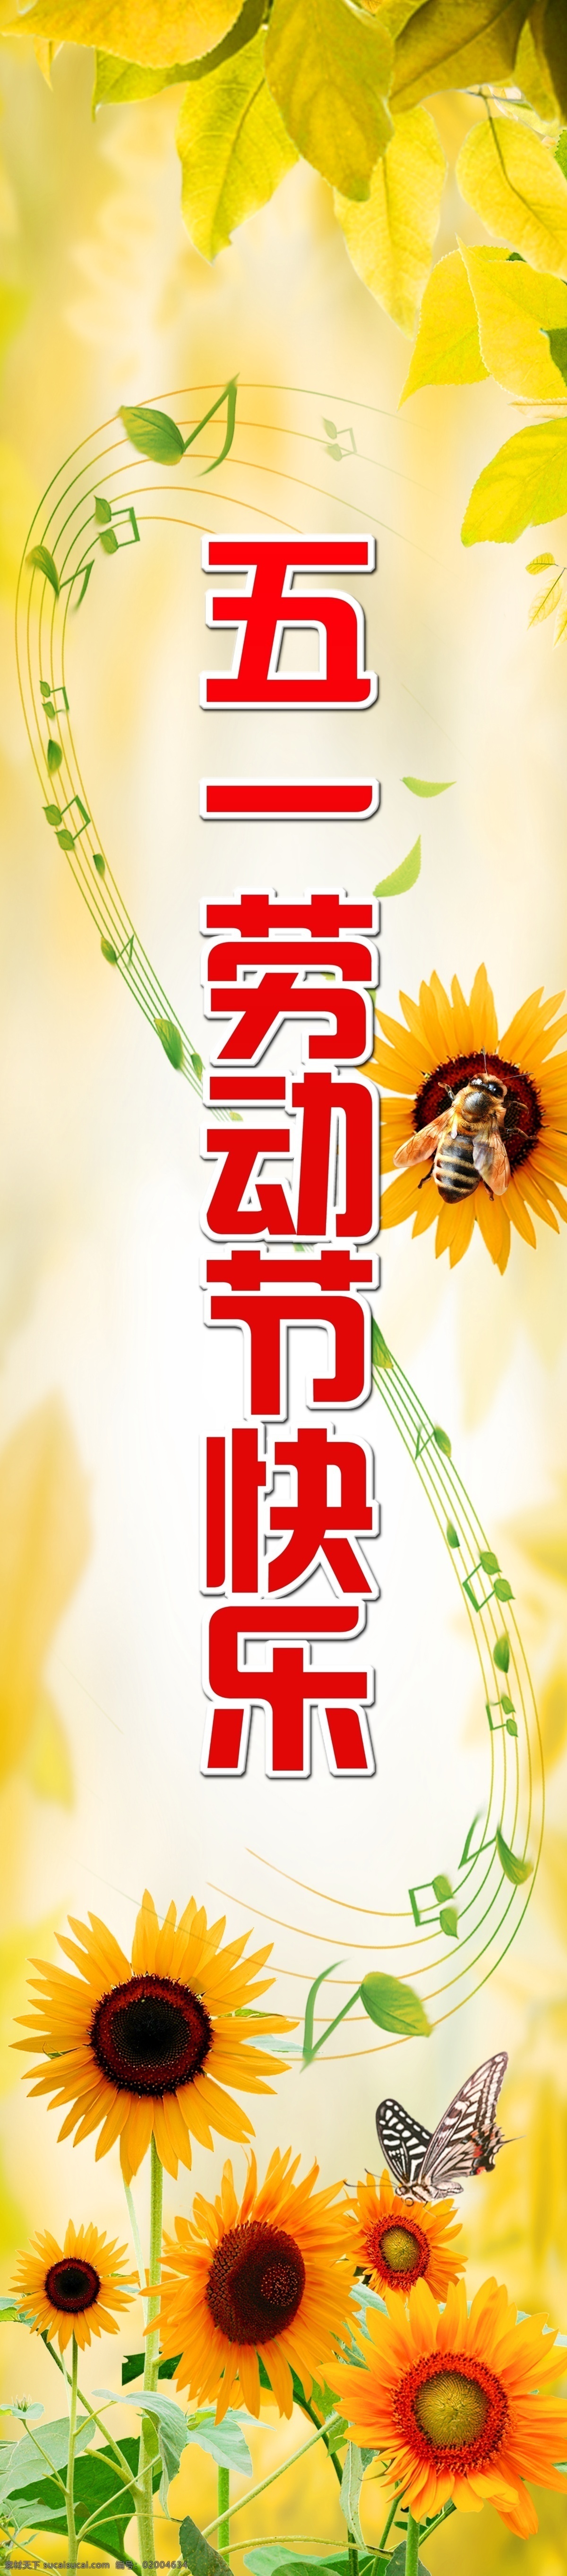 五一劳动节 快乐 音符 向日葵 蜜蜂 蝴蝶 广告设计模板 源文件